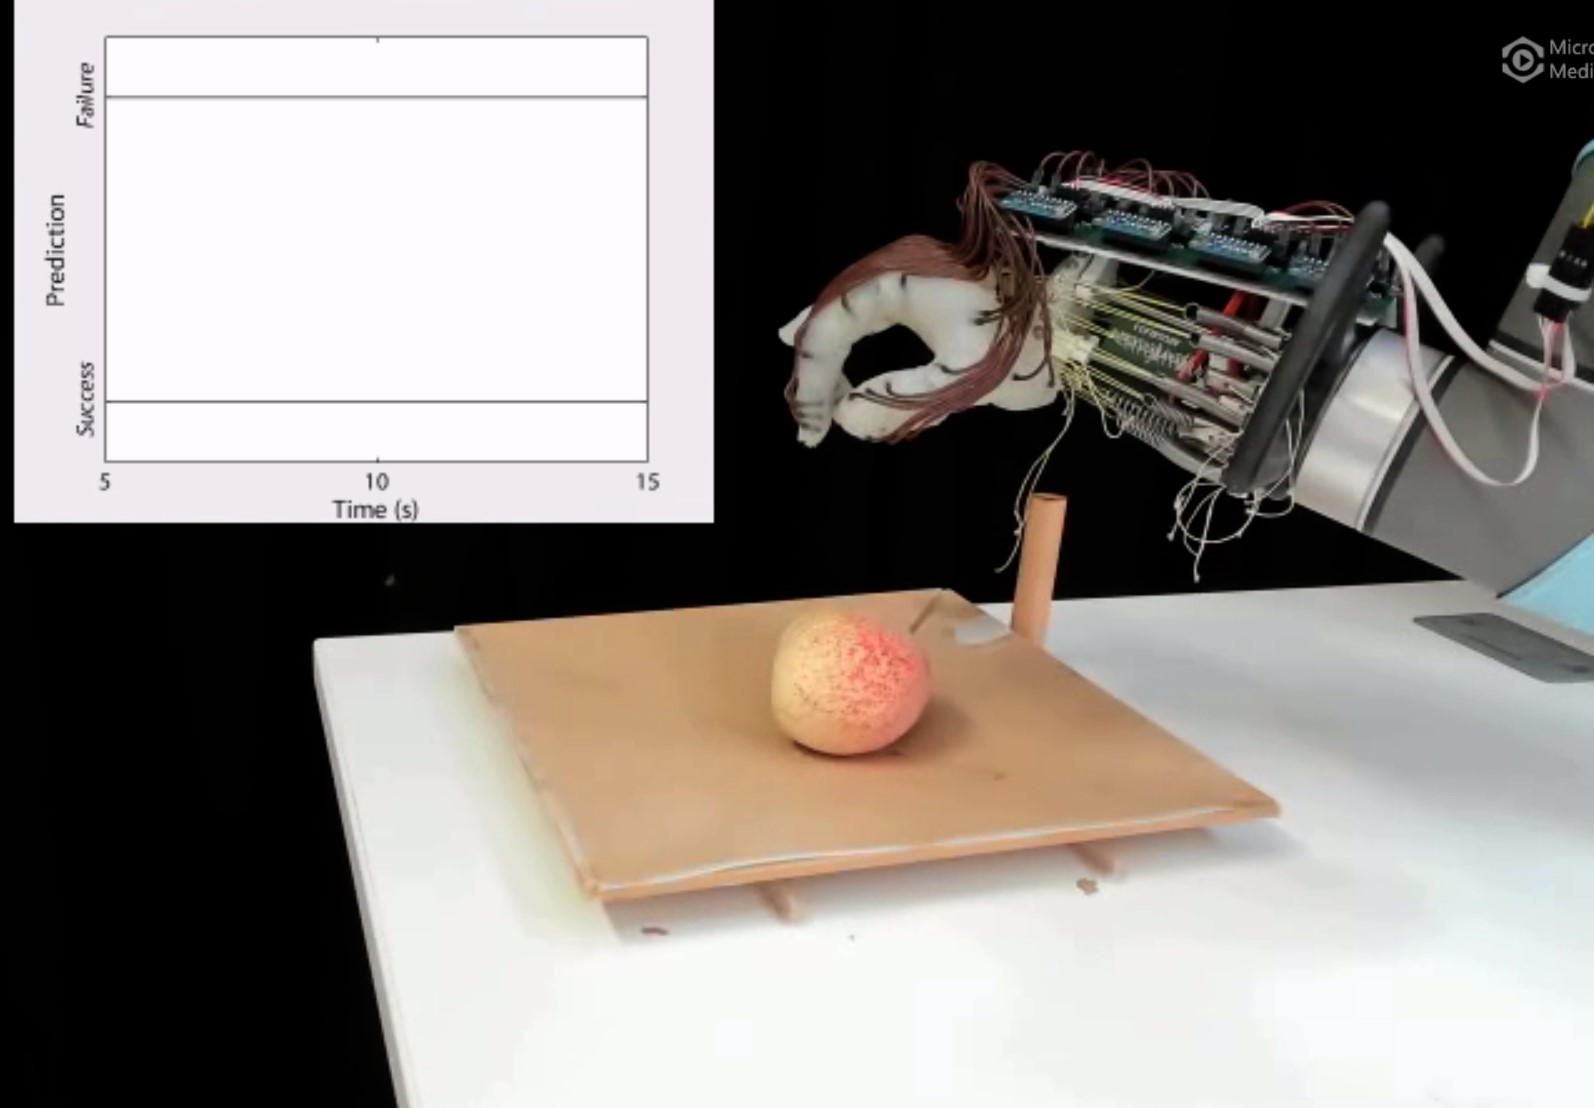 Robot hand picking up a peach